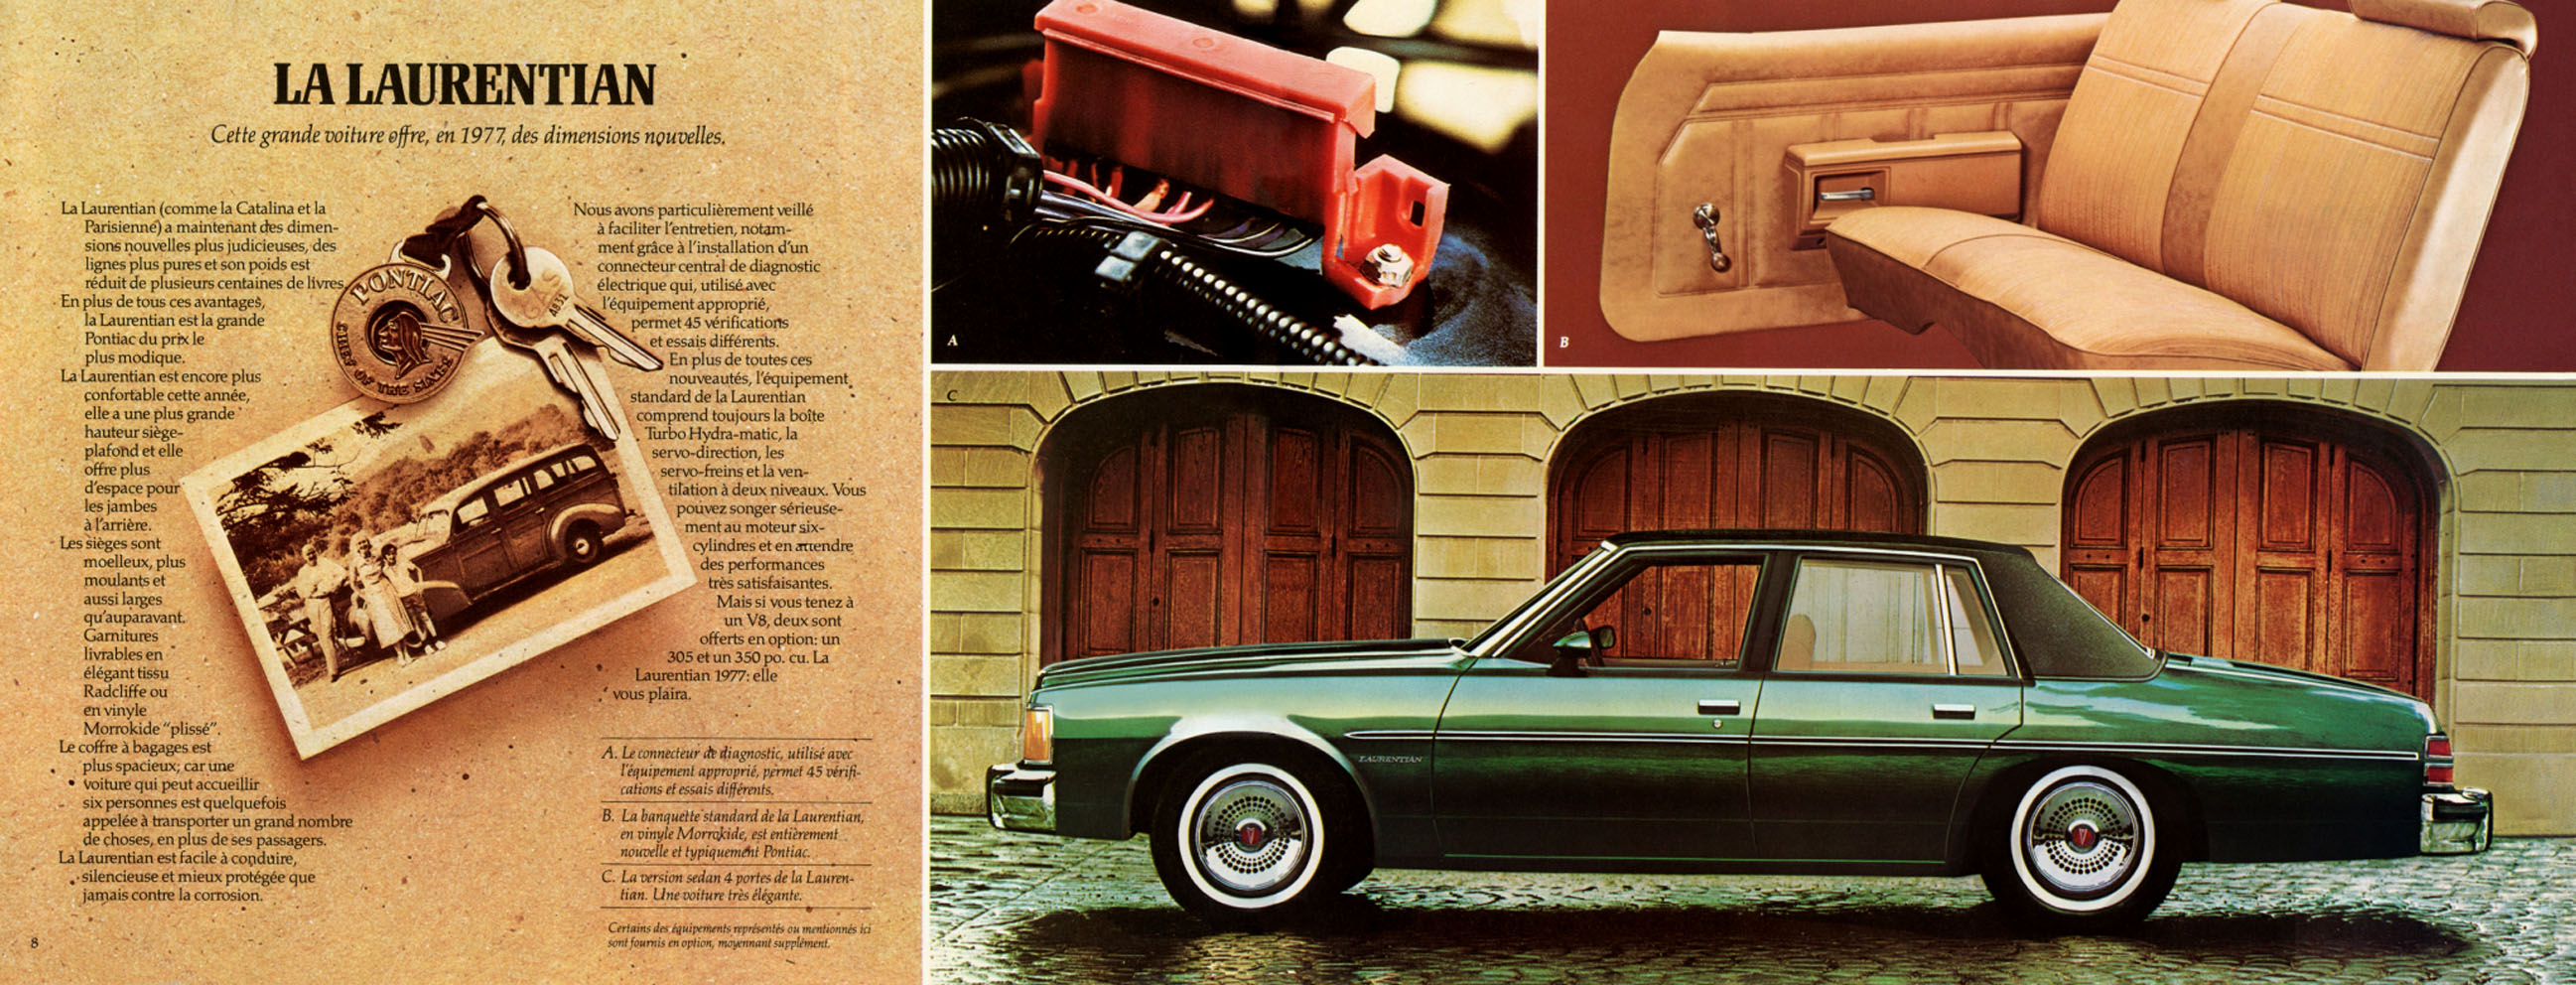 1977_Pontiac_Full_Size_Fr-08-09